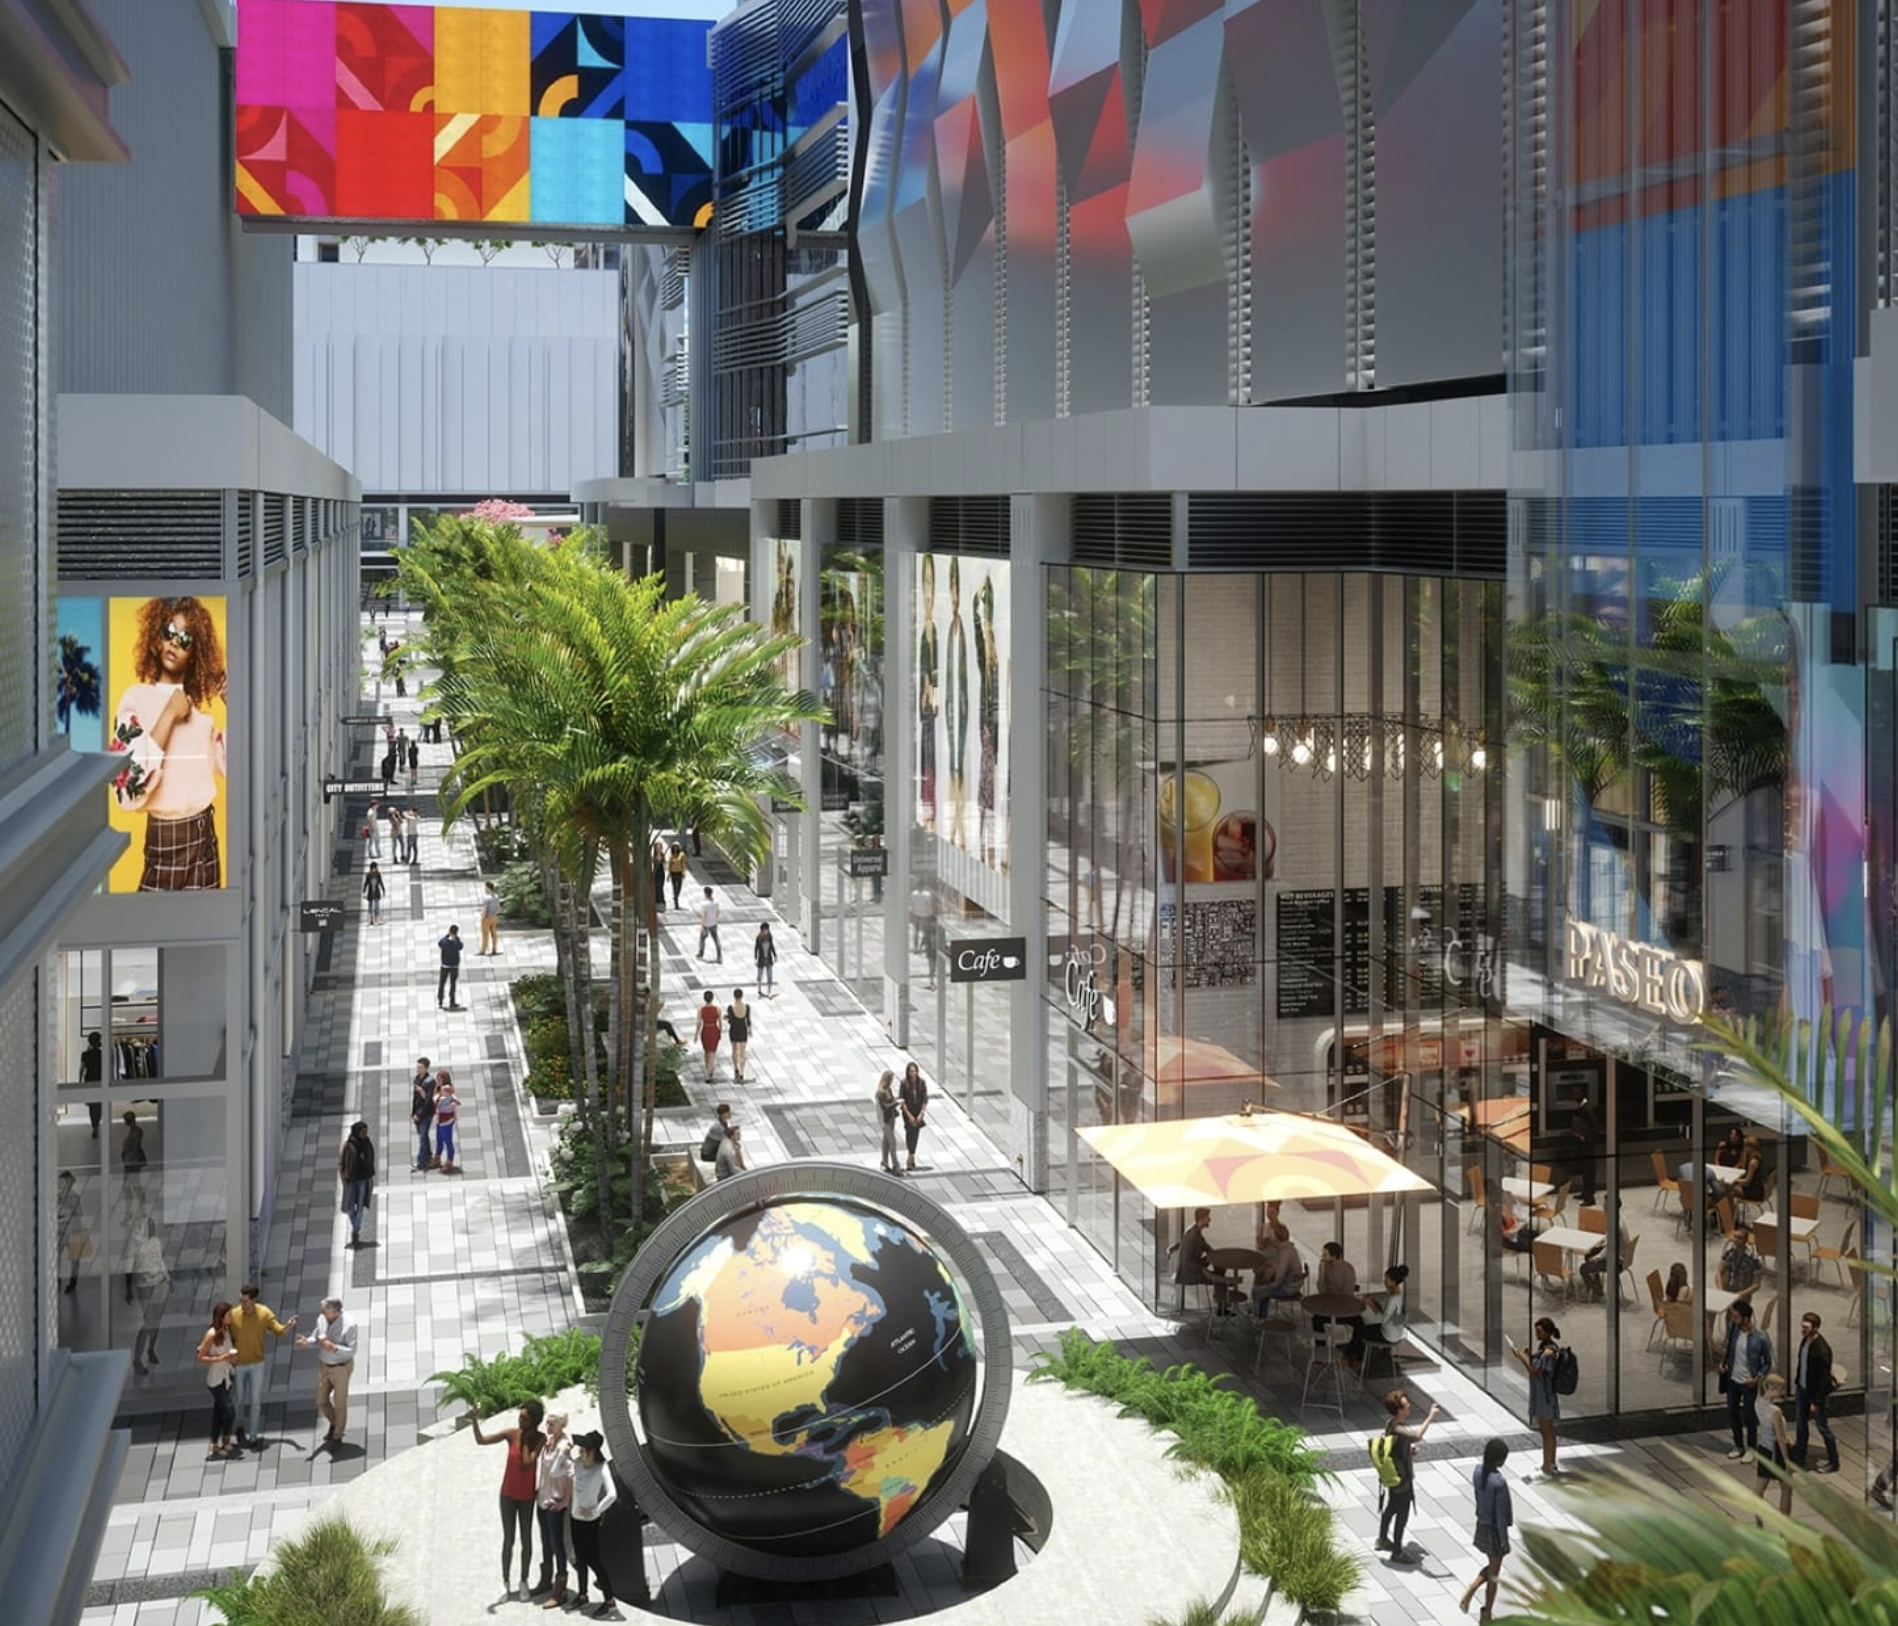 Miami Shopping Centers Analysis 2021